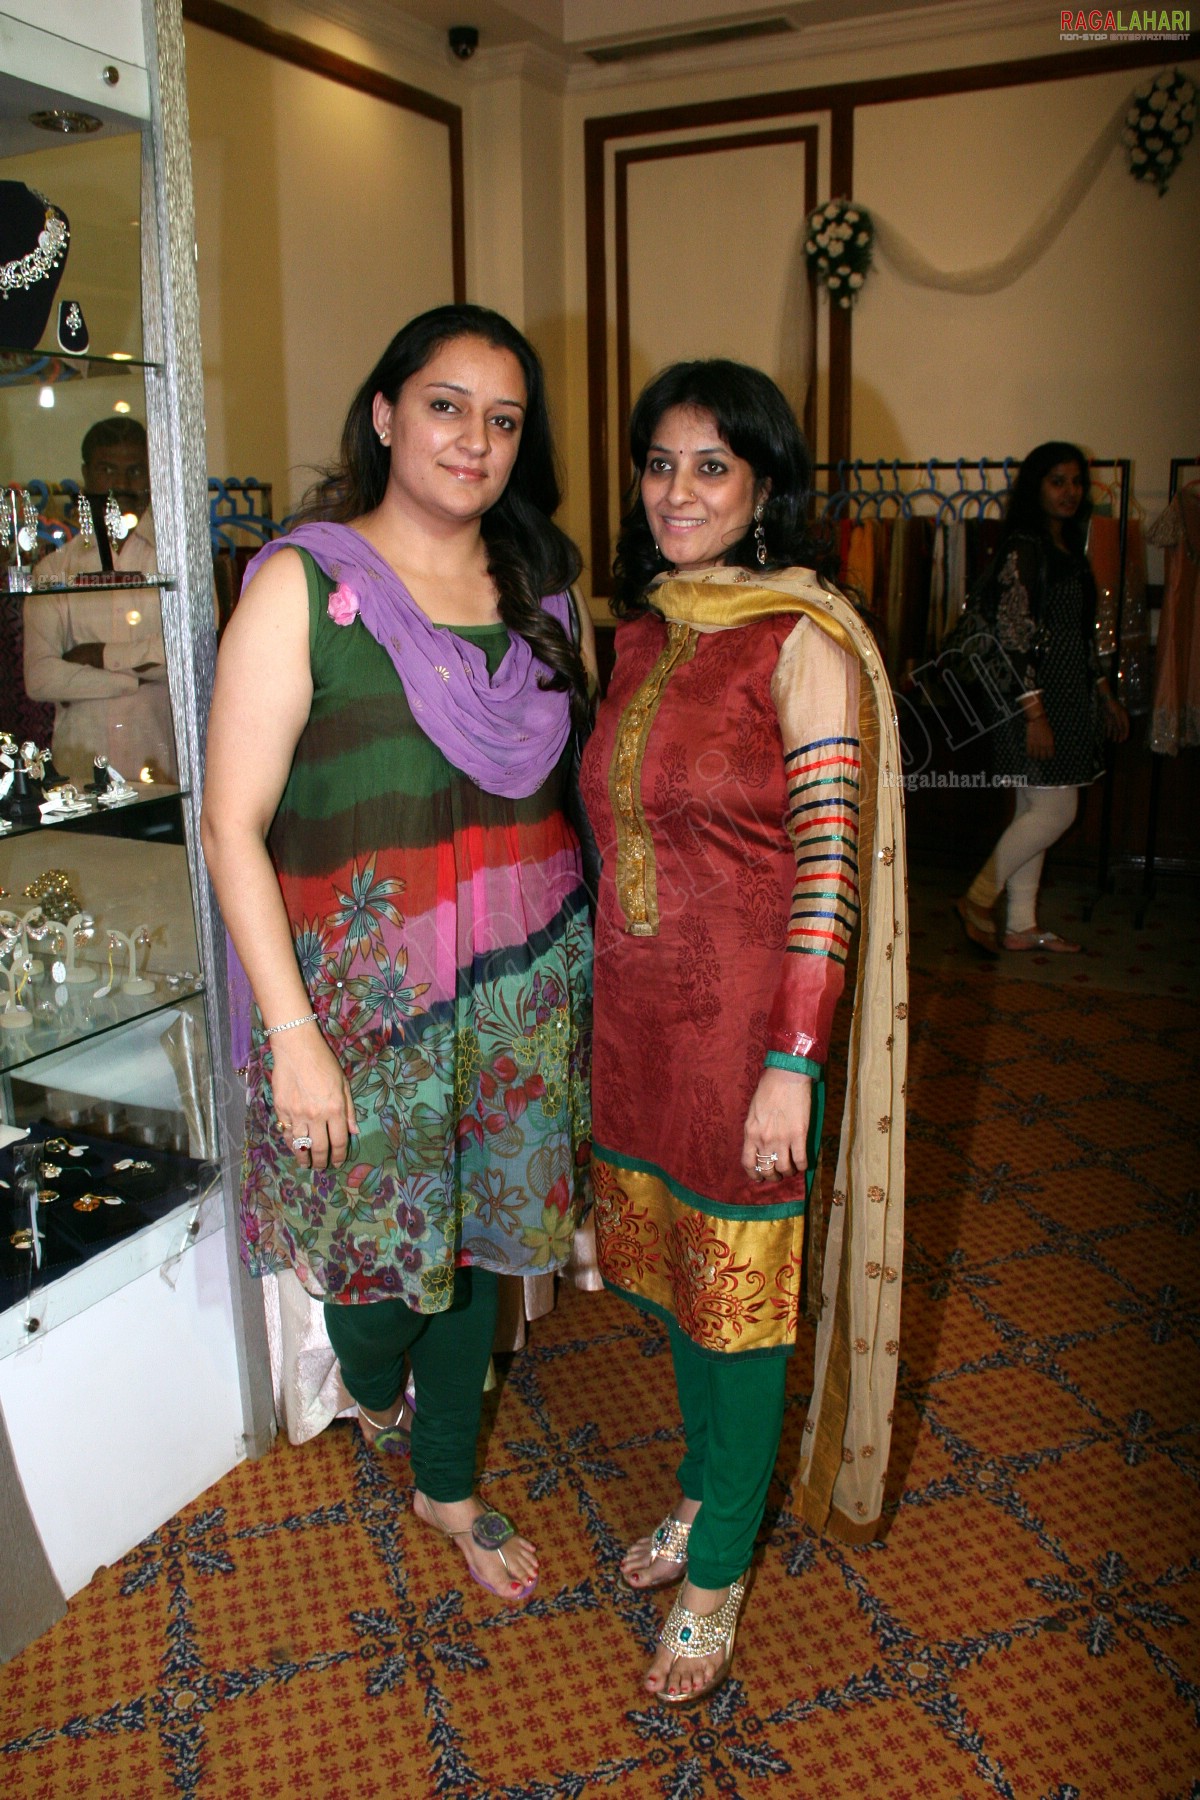 Namita Singhvee Designer Diamond Jewellery Exhibition